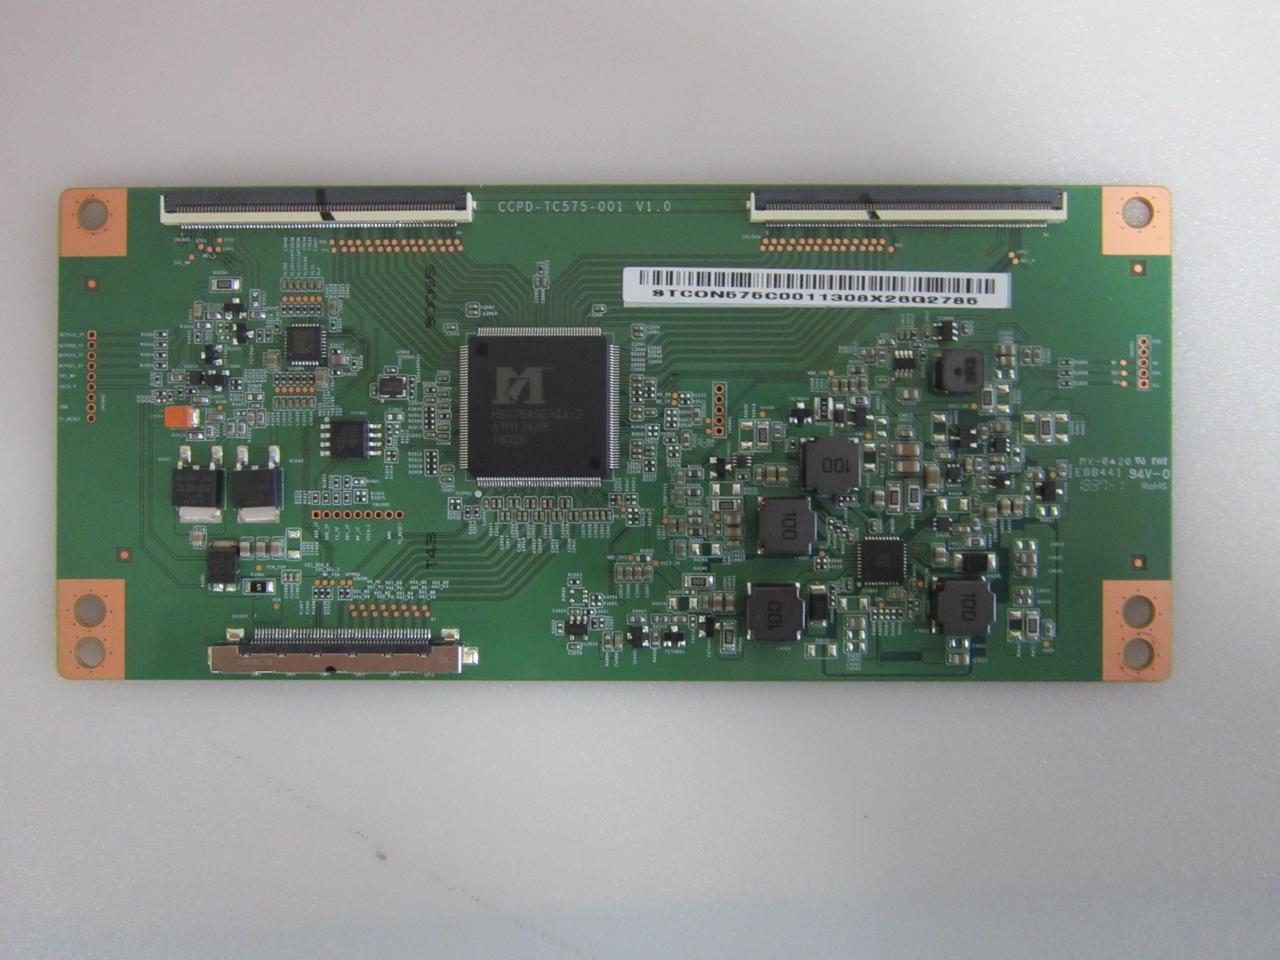 Hitachi 58C61 Onn 100005844 T-Con Board (STCON575C0011) CCPD-TC575-001 ...